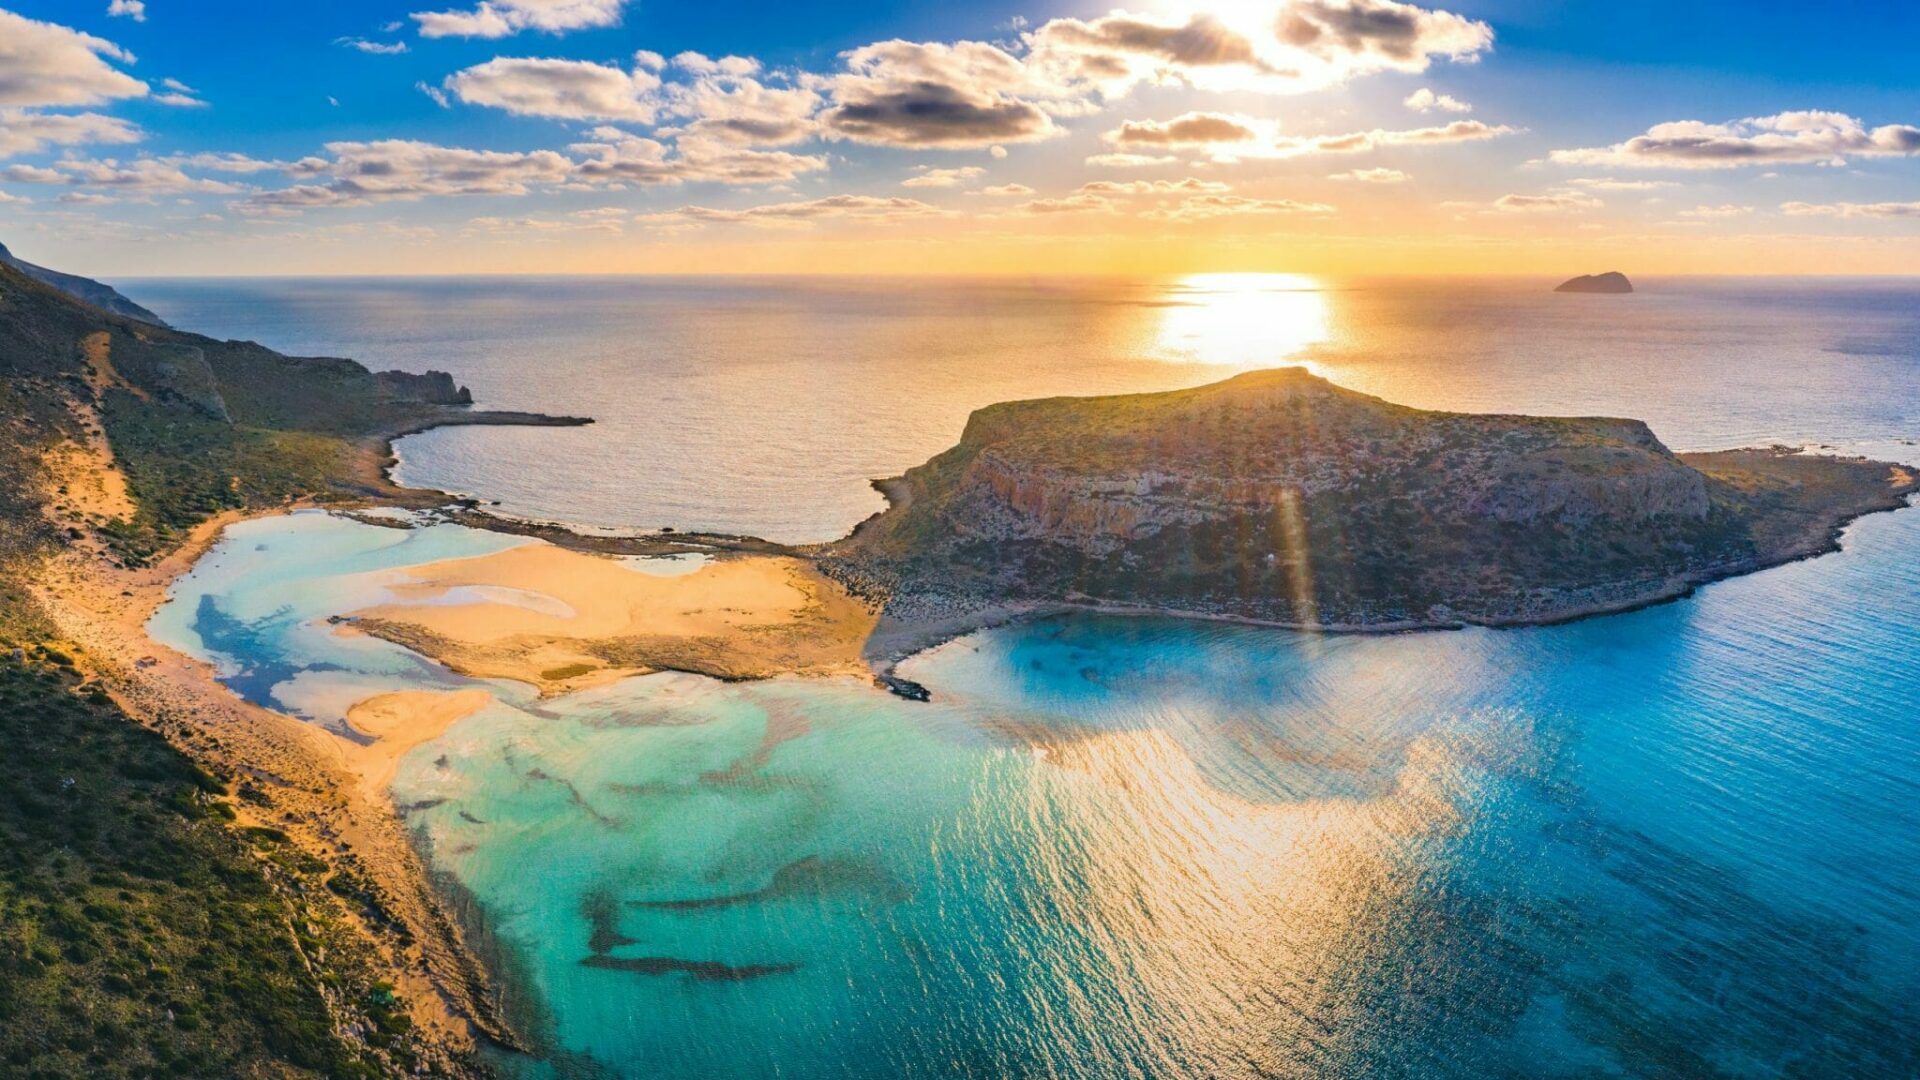 Urlaub Griechenland 2025 buchen beim REISEBÜRO Wache, Erfurt; im Bild: Felsen, die mit einer Sandbank-Verbindung mit einem Felsen im Meer verbunden sind, die Sonne versinkt dahinter im Meer